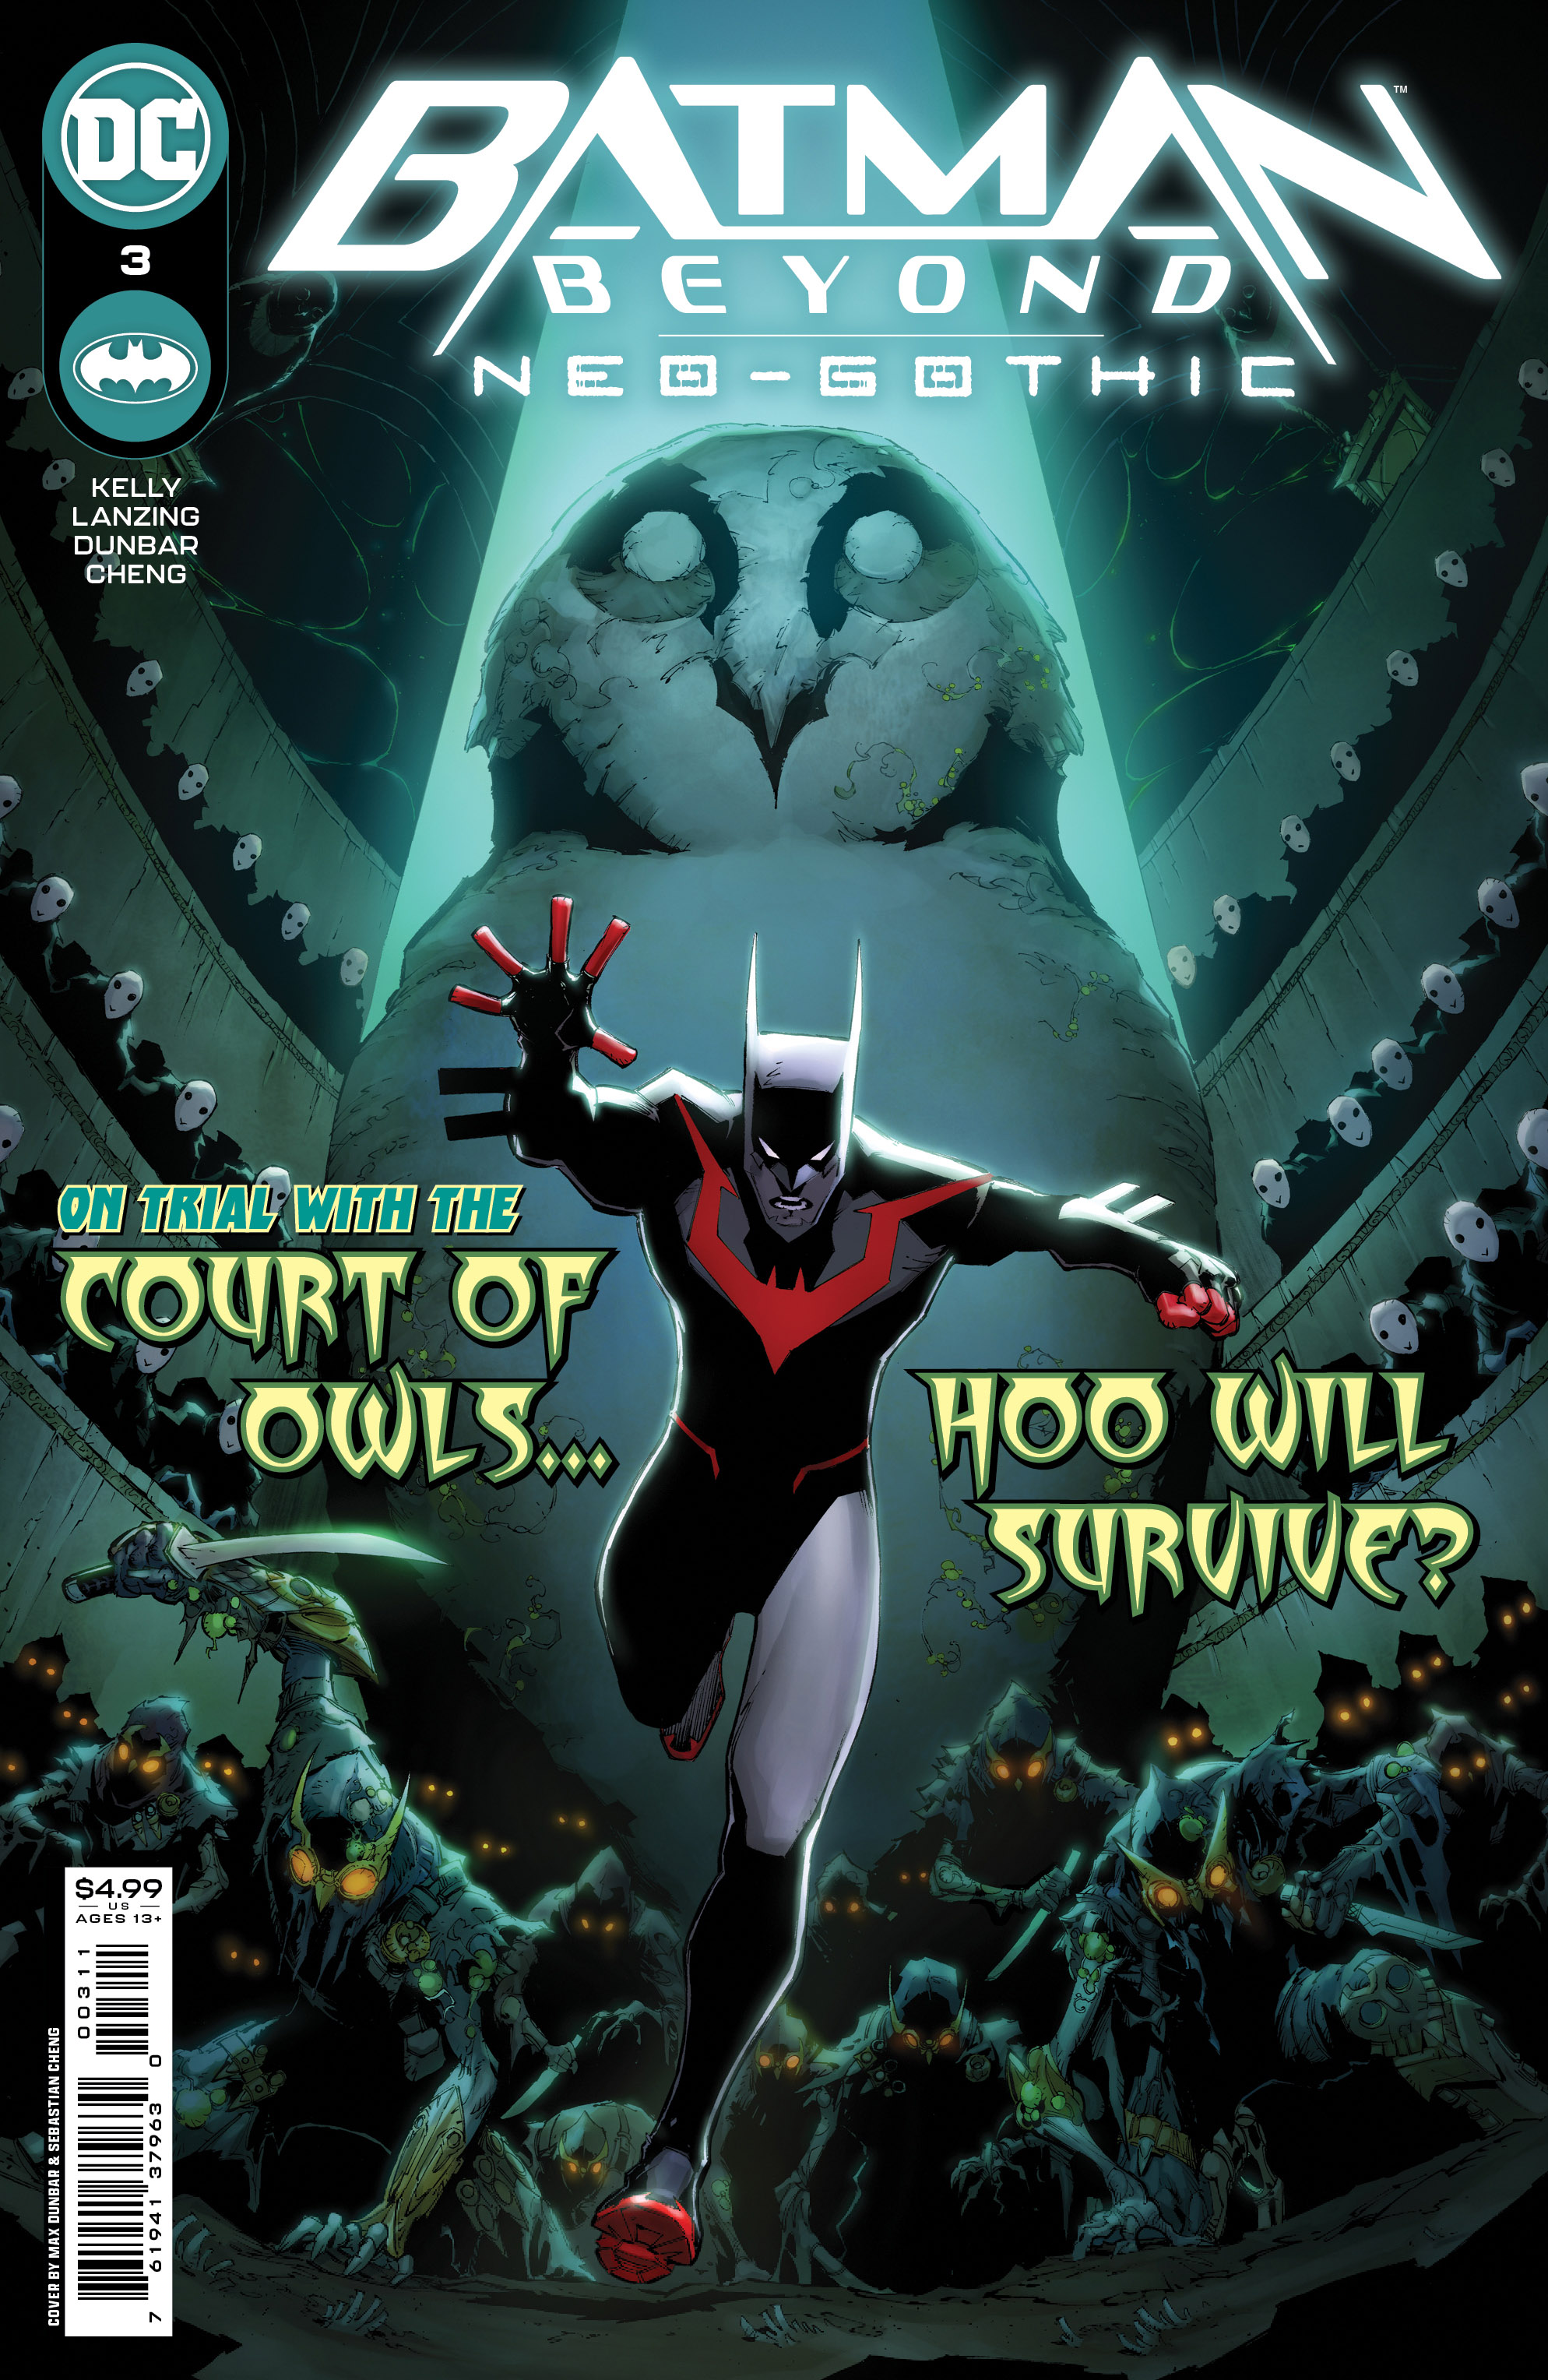 Batman Beyond Neo-Gothic #3 Cover A Max Dunbar